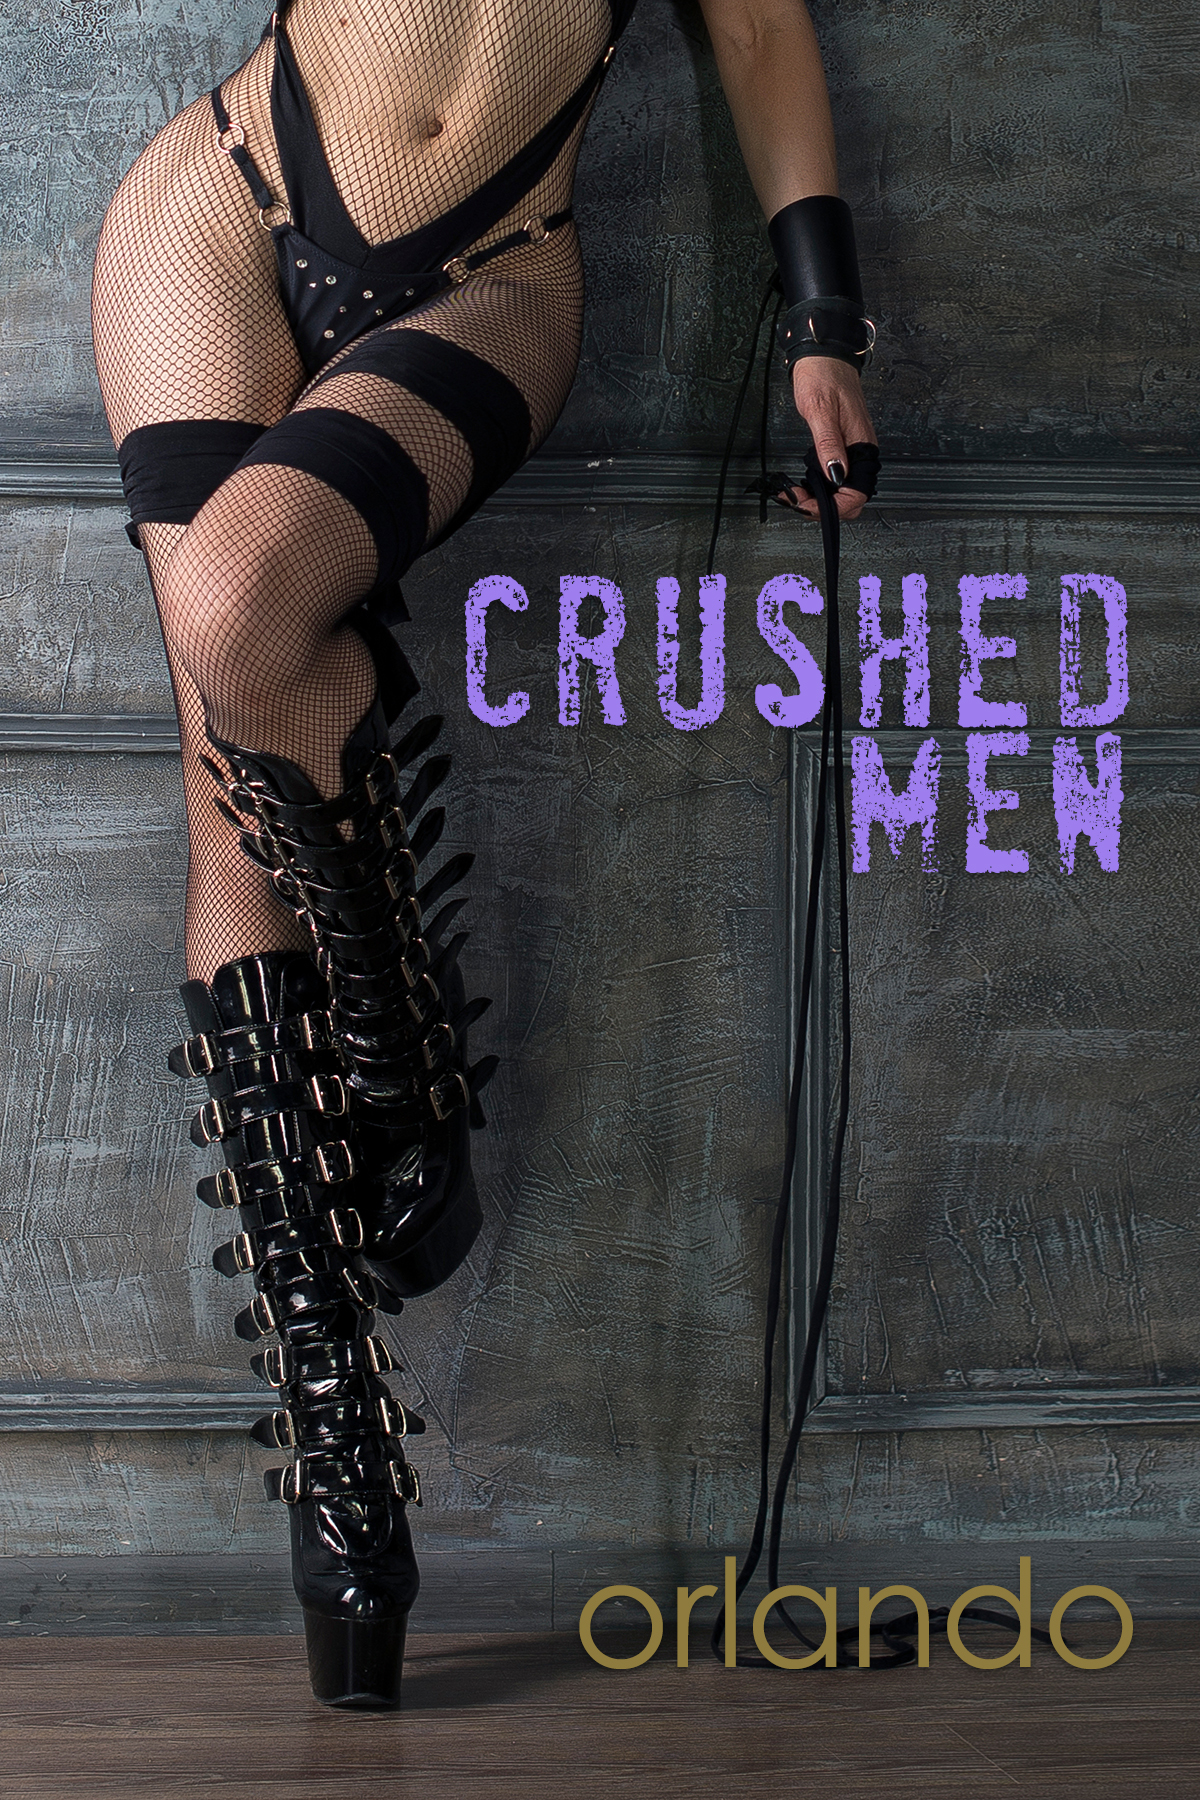 Crushed Men